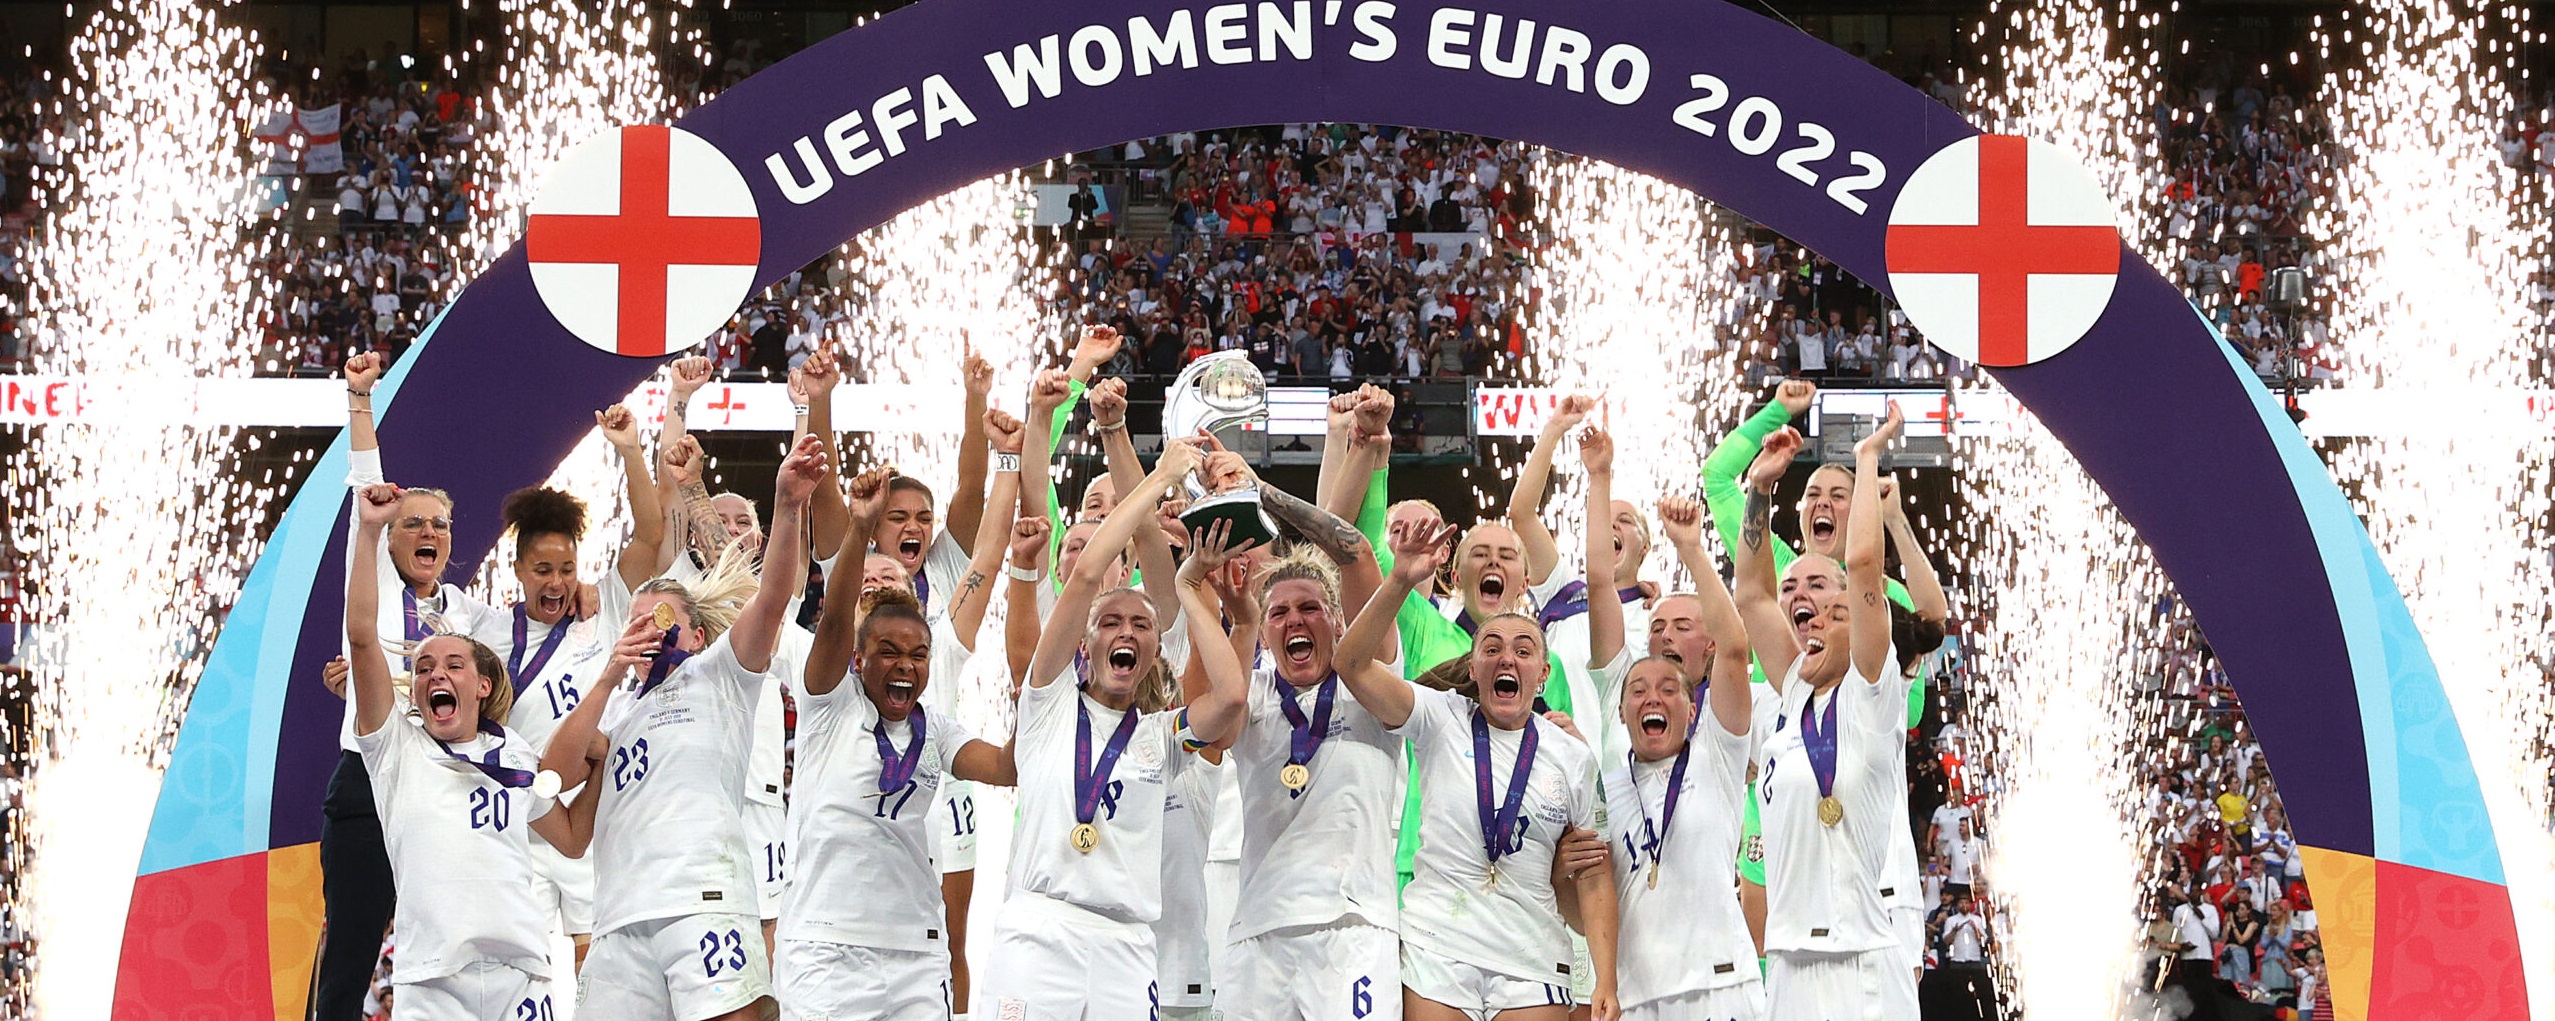 Piala Eropa Wanita 2022 Ditonton Hingga 365 Juta Orang di Seluruh Dunia